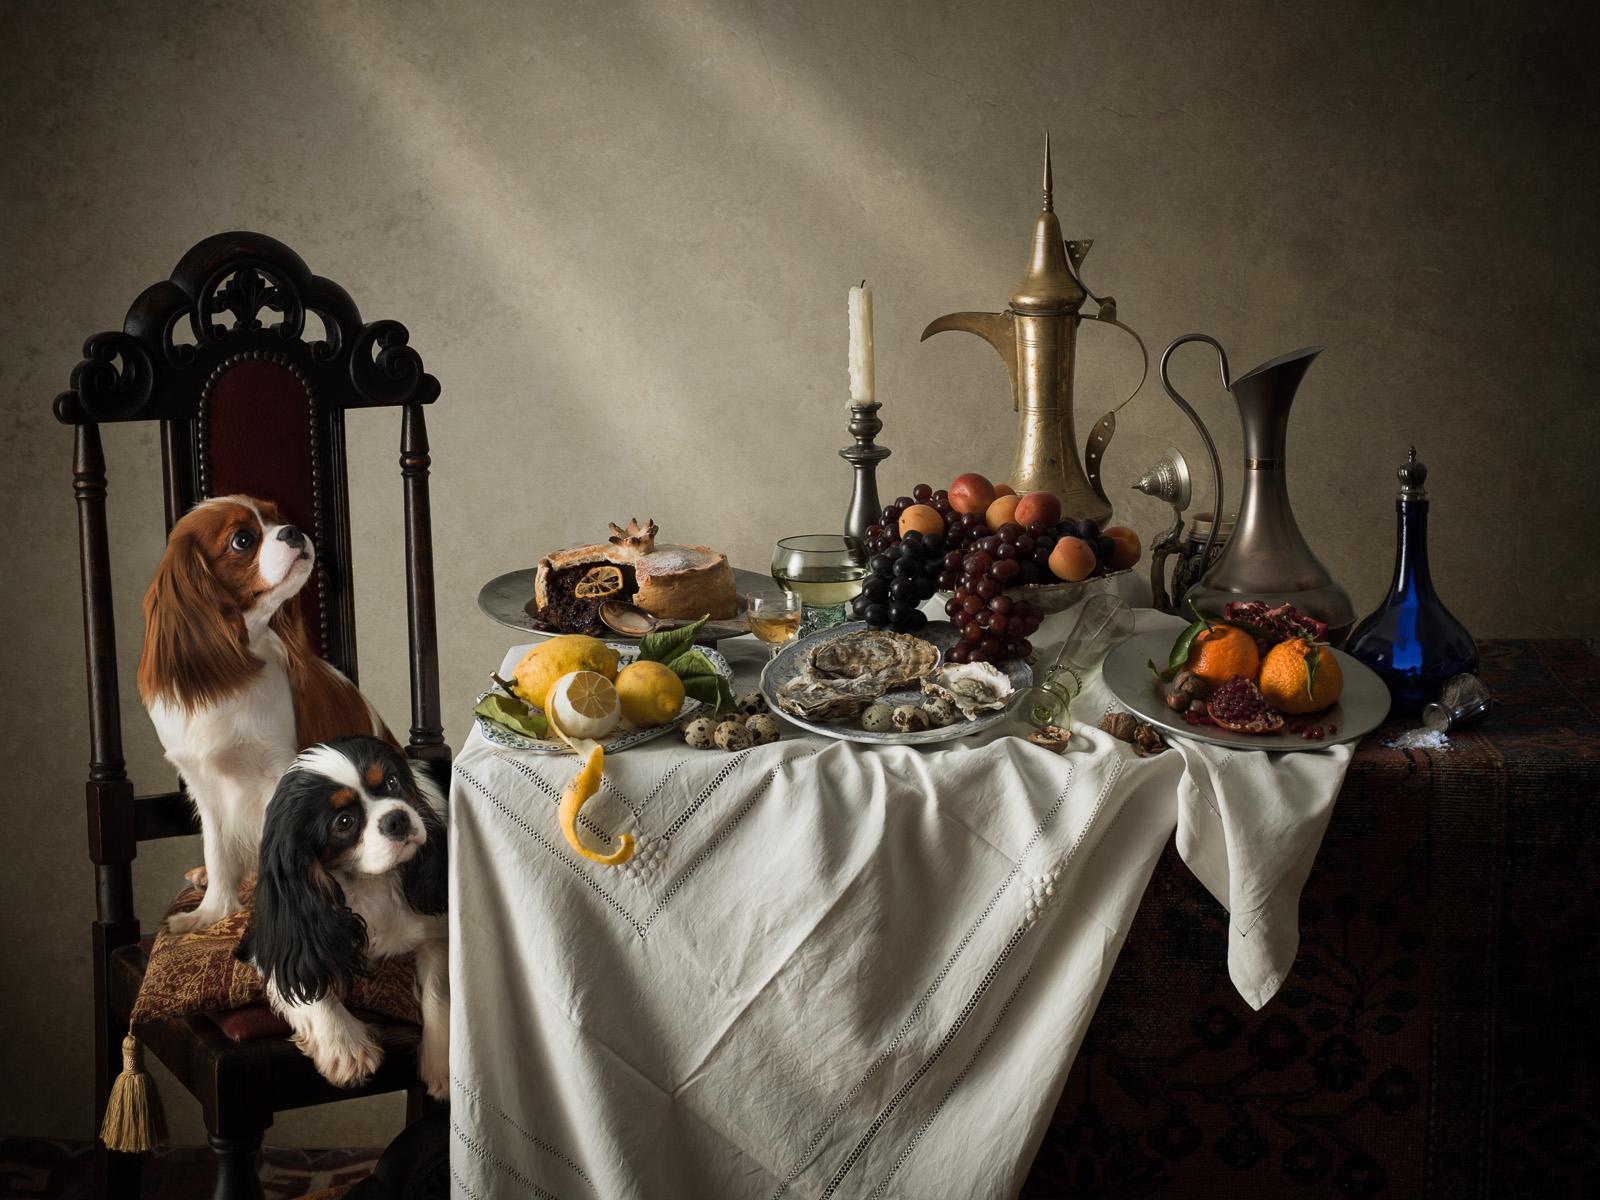 Tim Platt Color Photograph – Niederländischer Hund #3 König Charles Spaniels – Tier, signiert, zeitgenössisch, limitierte Auflage